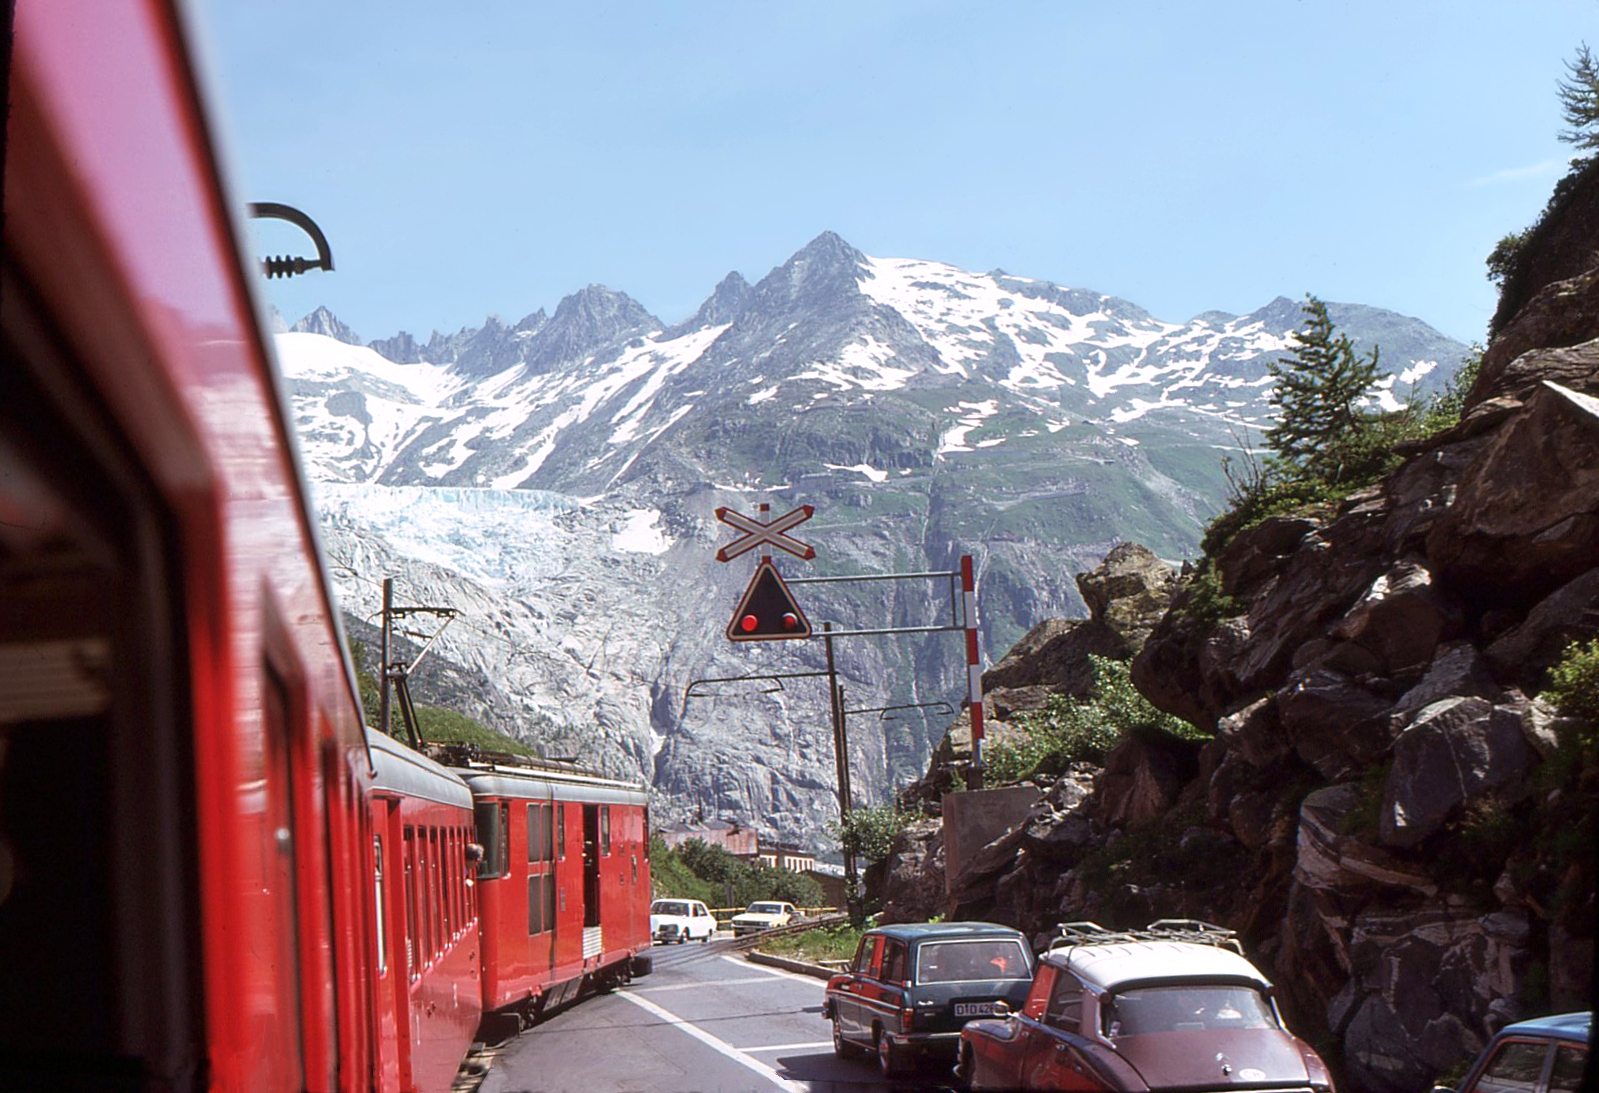 Matterhorn-Gotthard-Bahn - damals war der Gletscher (Rhonegletscher) noch zu sehen, als der Regelzug (allerdings nur im Sommer) die Bergstrecke über die Furka noch befuhr. Im Bild Gletsch, mit Triebwagen Deh4/4 I 53. 28. Juli 1975. Da machte es noch Sinn, vom  Glacier Express  zu sprechen. Heute hat sich leider der Gletscher so weit zurückgezogen, dass er auch aus der Dampfbahn Furka Bergstrecke nicht mehr zu erkennen ist. 